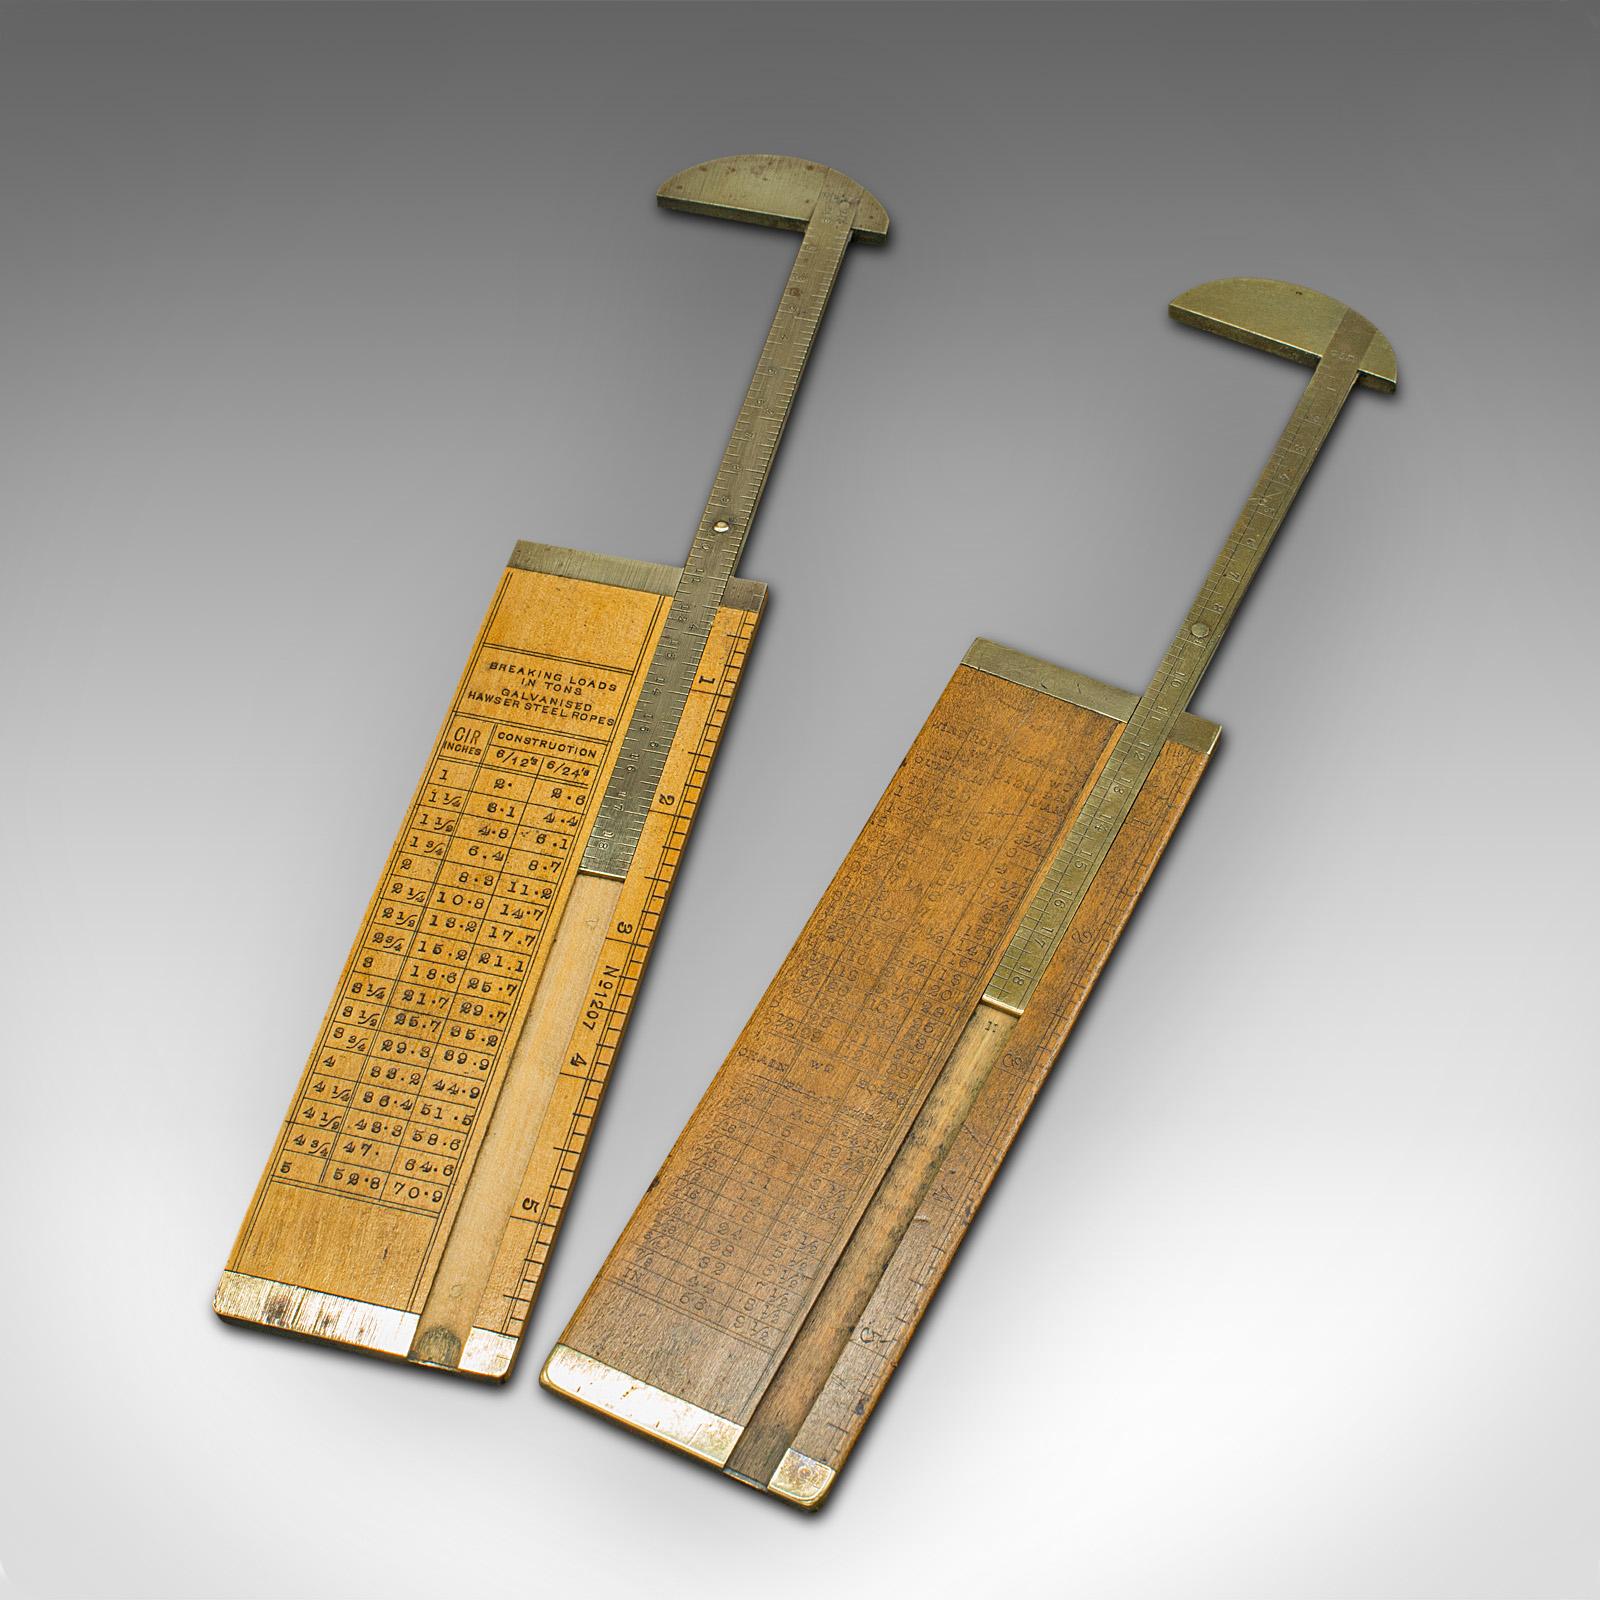 Dies ist ein Paar antiker Messschieber für Tauwerk. Ein englisches Seil- oder Kabelmaß aus Buchsbaum und Messing von J. Rabone aus der späten viktorianischen Zeit, um 1900.

Zwei faszinierende 6